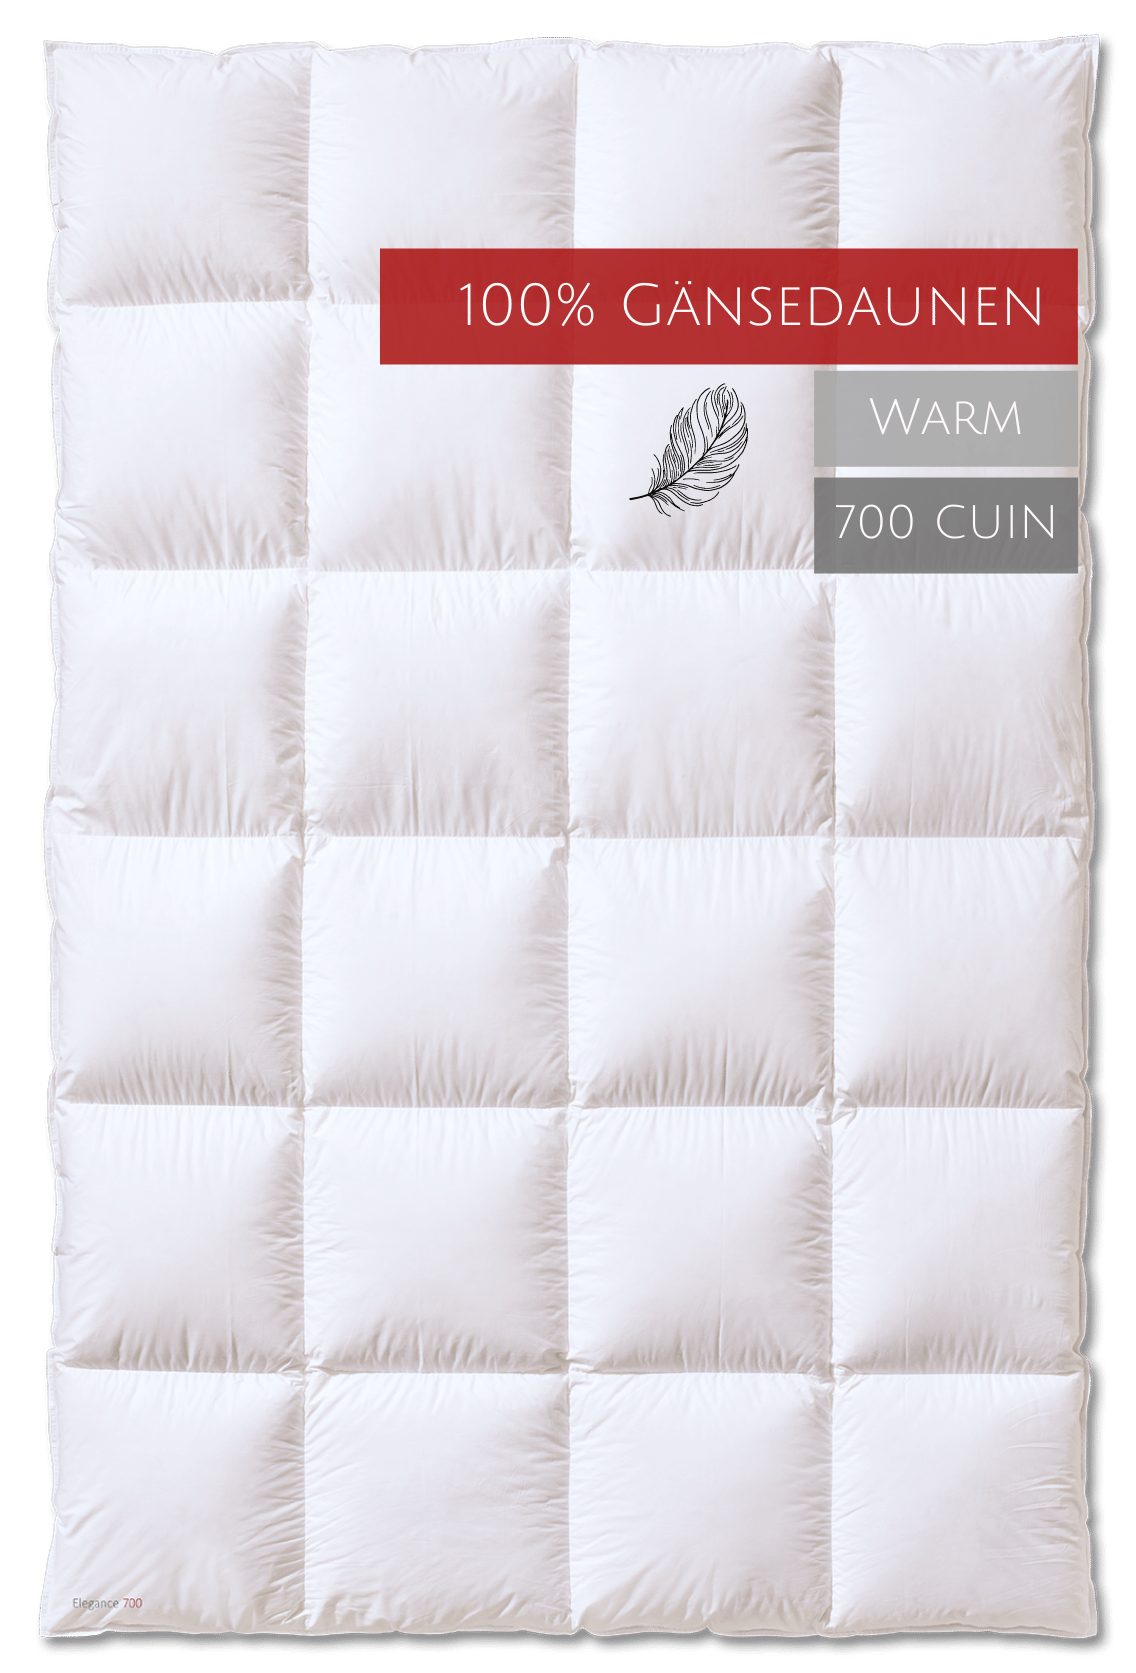 Gänsedaunen, Elegance Baumwolle, 700 Gänsedaunenbettdecke, "warm", 100% Bezug: allergikerfreundlich Füllung: Kauffmann, Wärmestufe